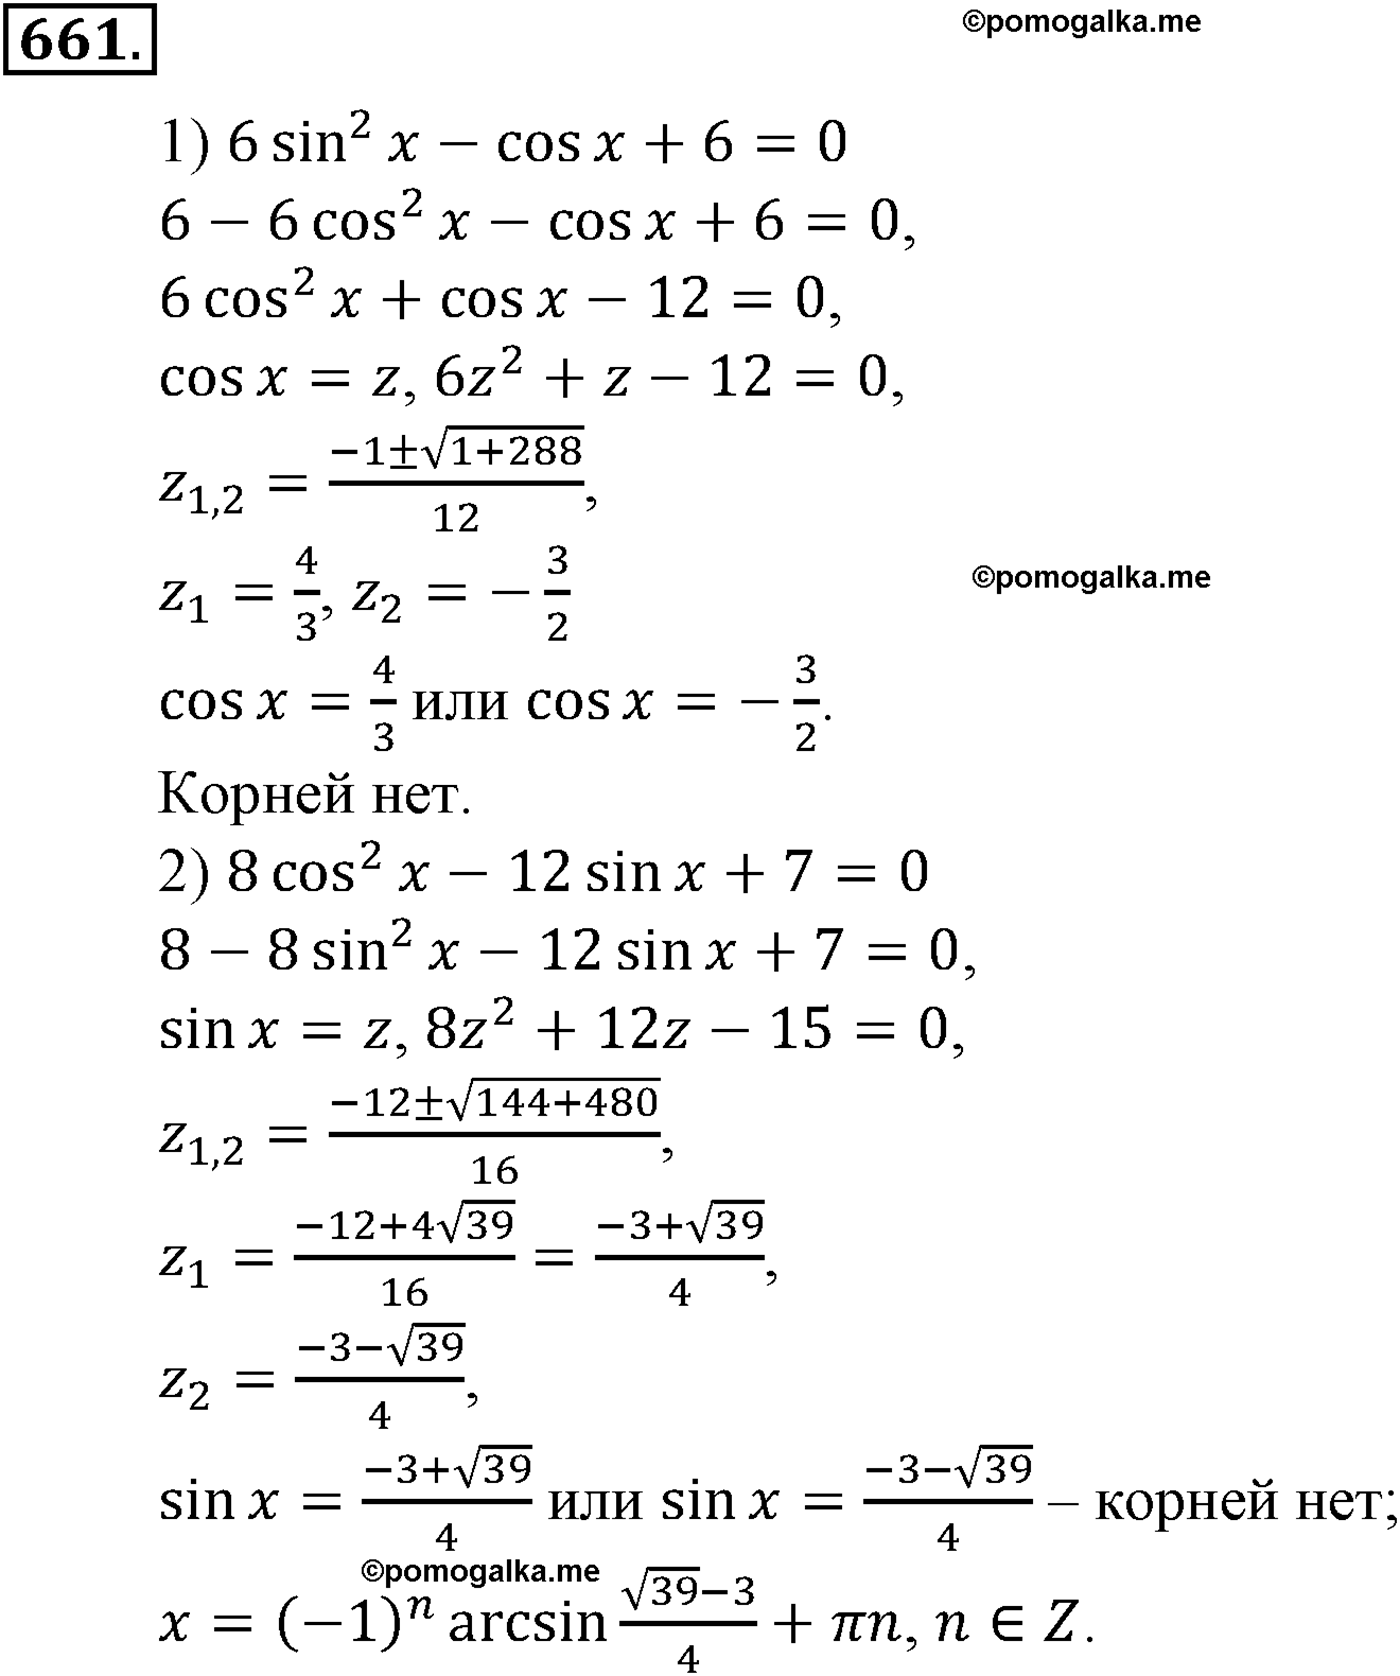 разбор задачи №661 по алгебре за 10-11 класс из учебника Алимова, Колягина